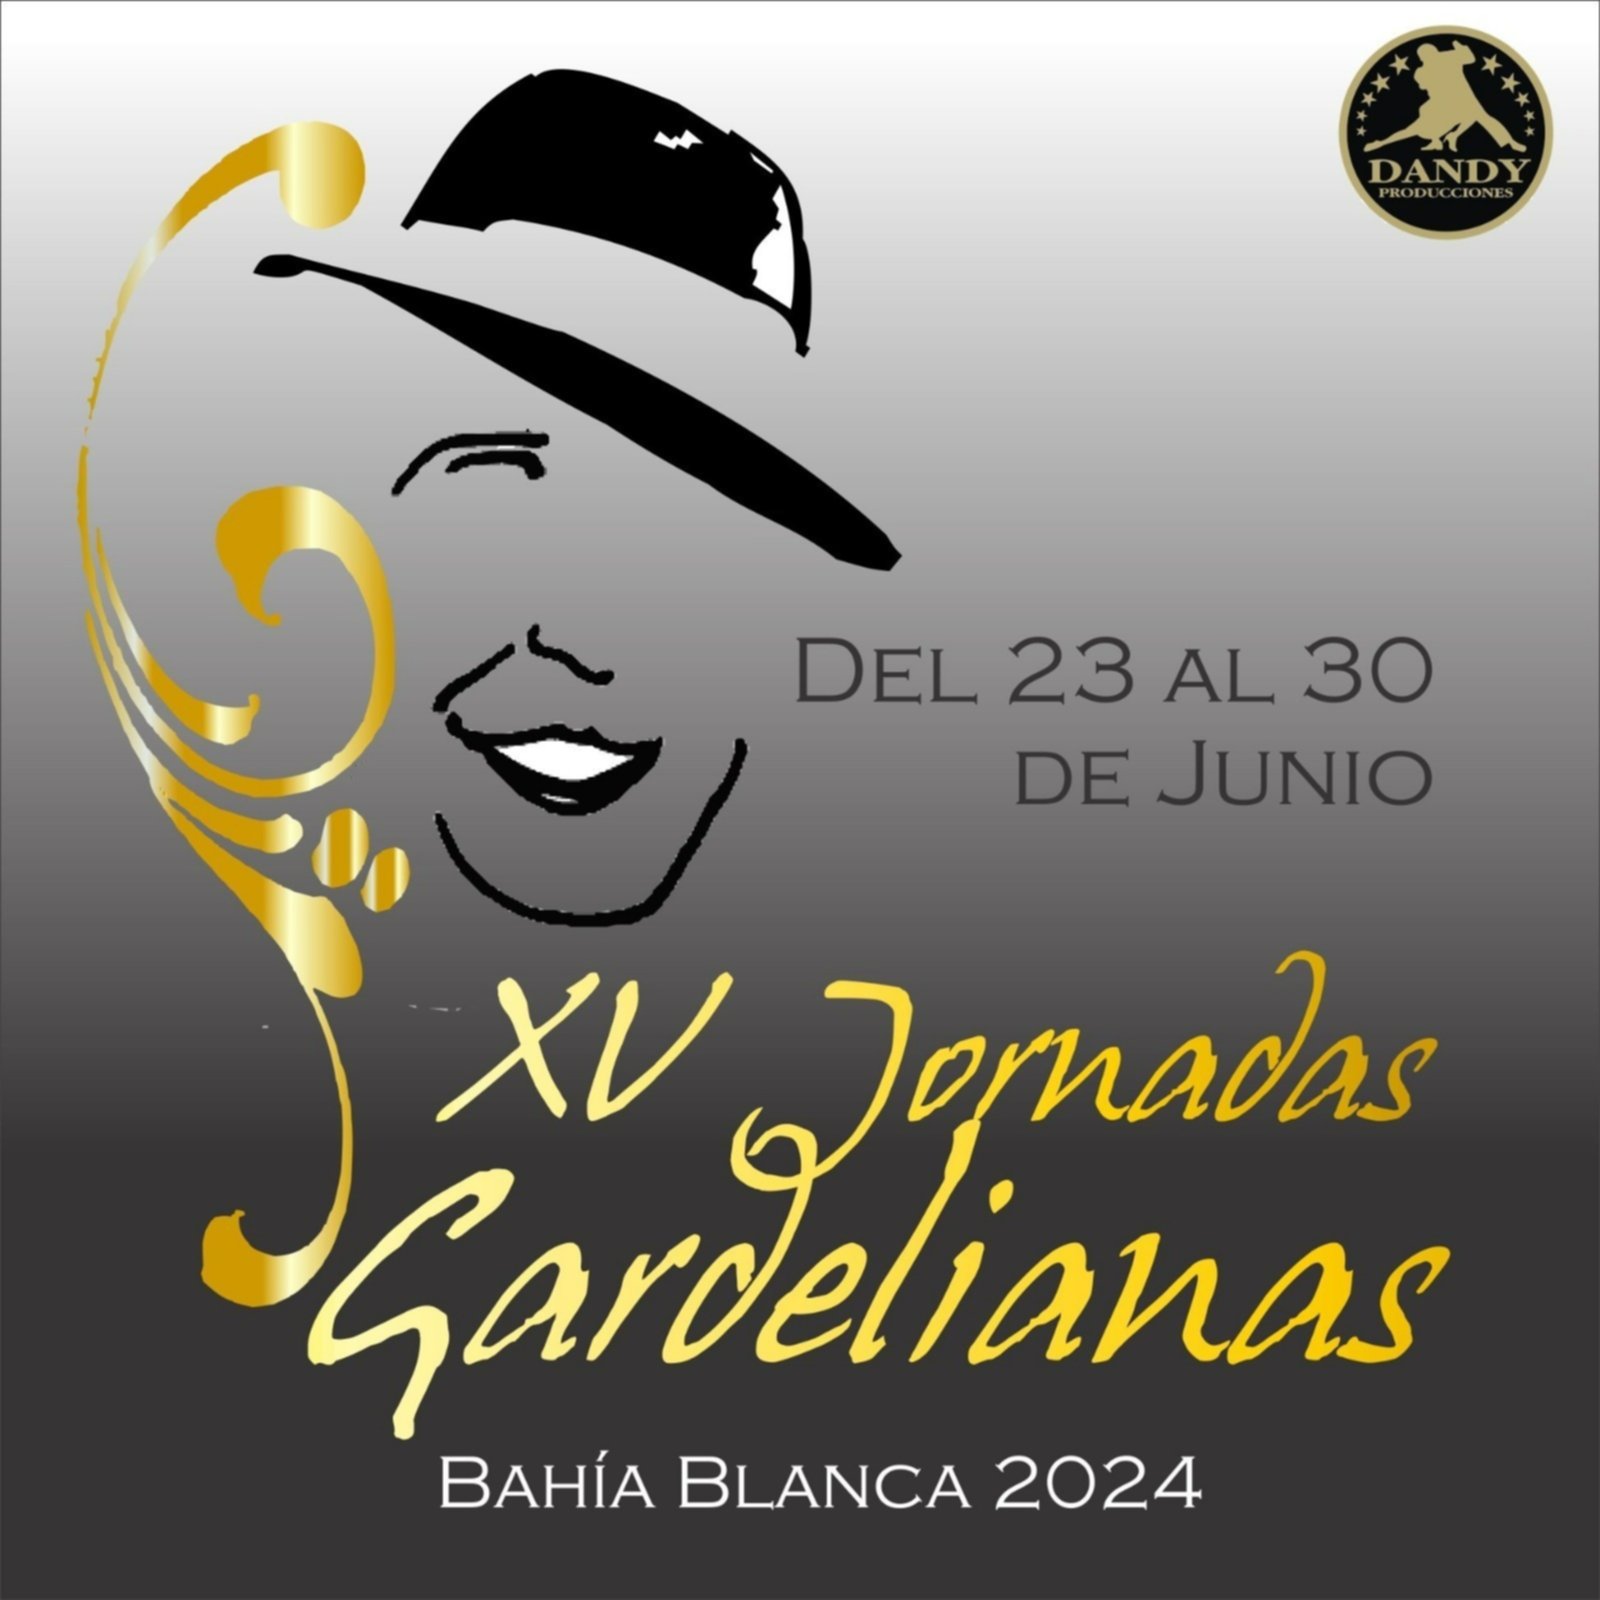 Comienzan la XV edición de las Jornadas Gardelianas en Bahía Blanca